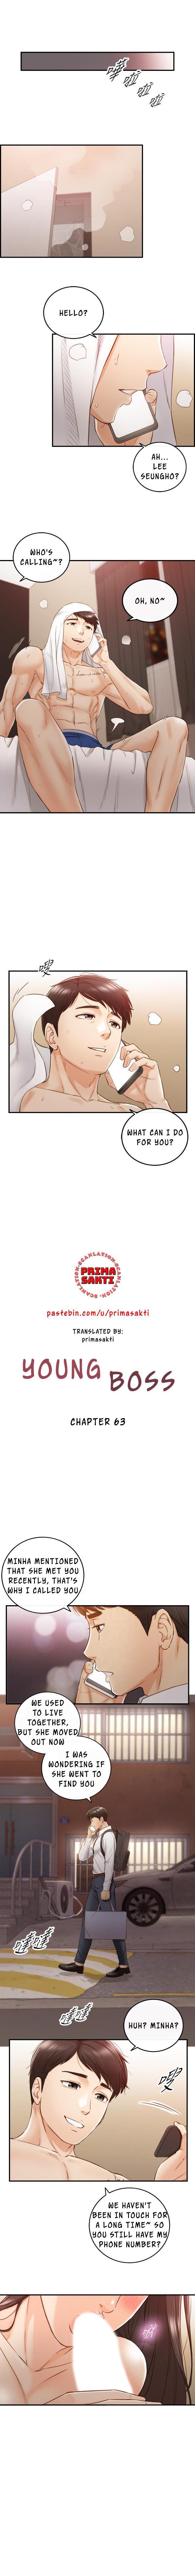 Young Boss Manhwa 01-73 499